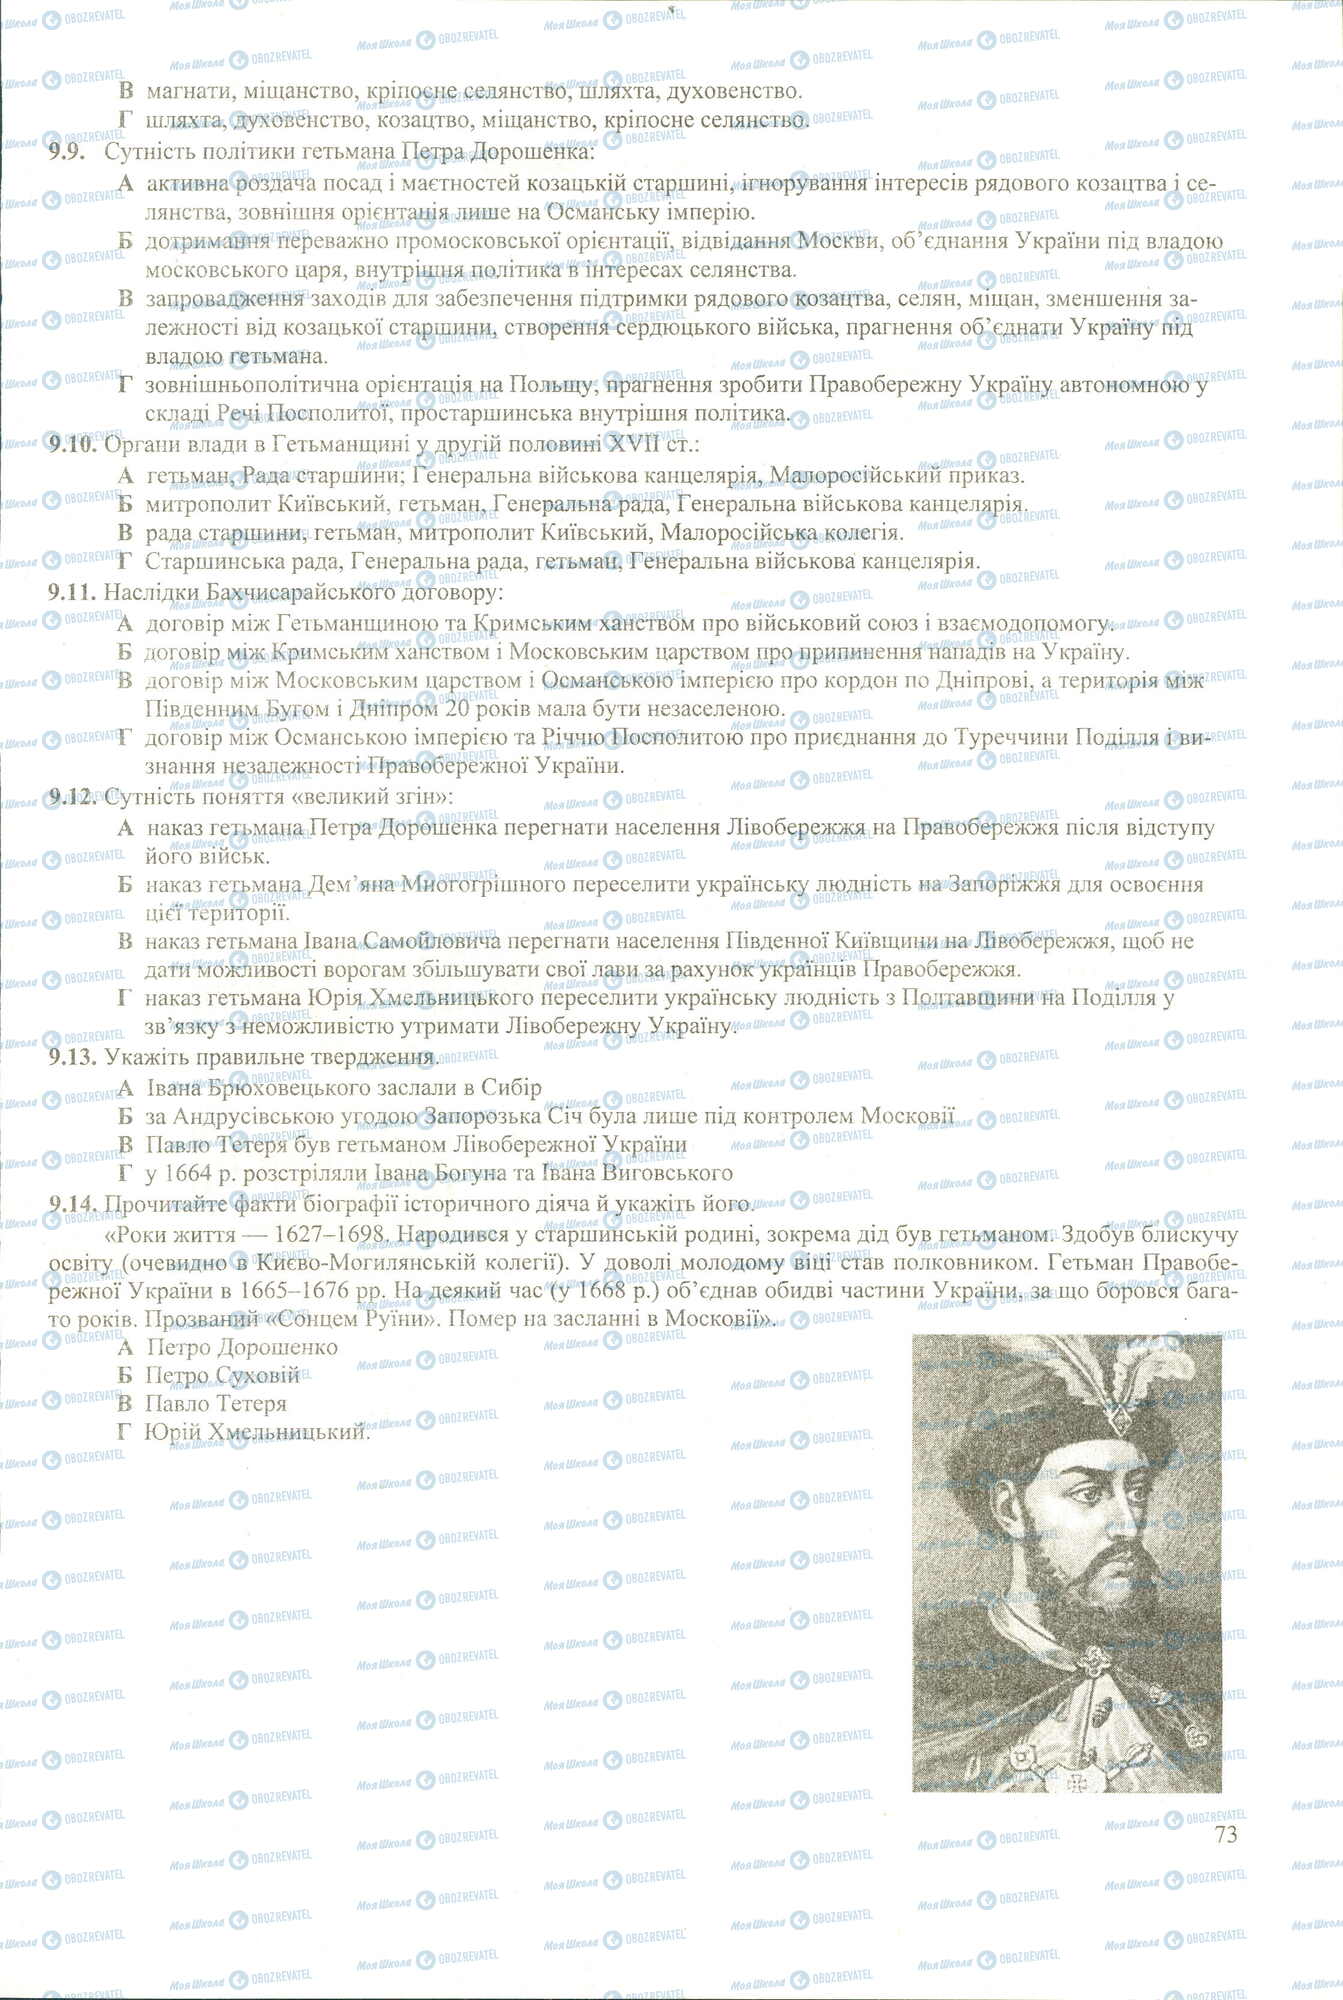 ЗНО История Украины 11 класс страница 9-14